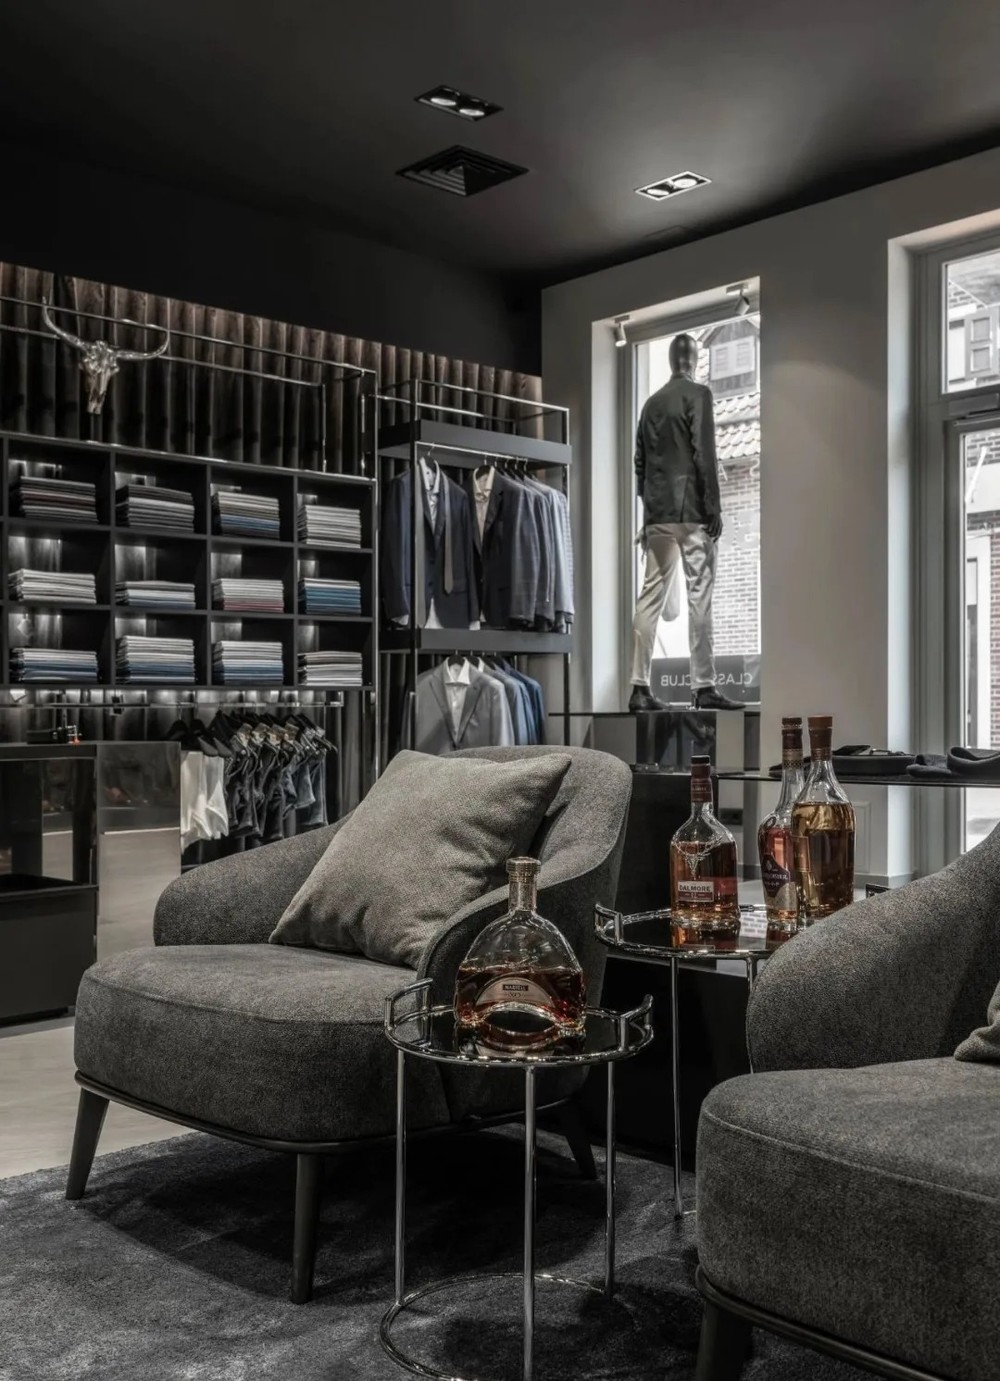 这家服装店整体用了质感的黑白灰色调,简约时尚!